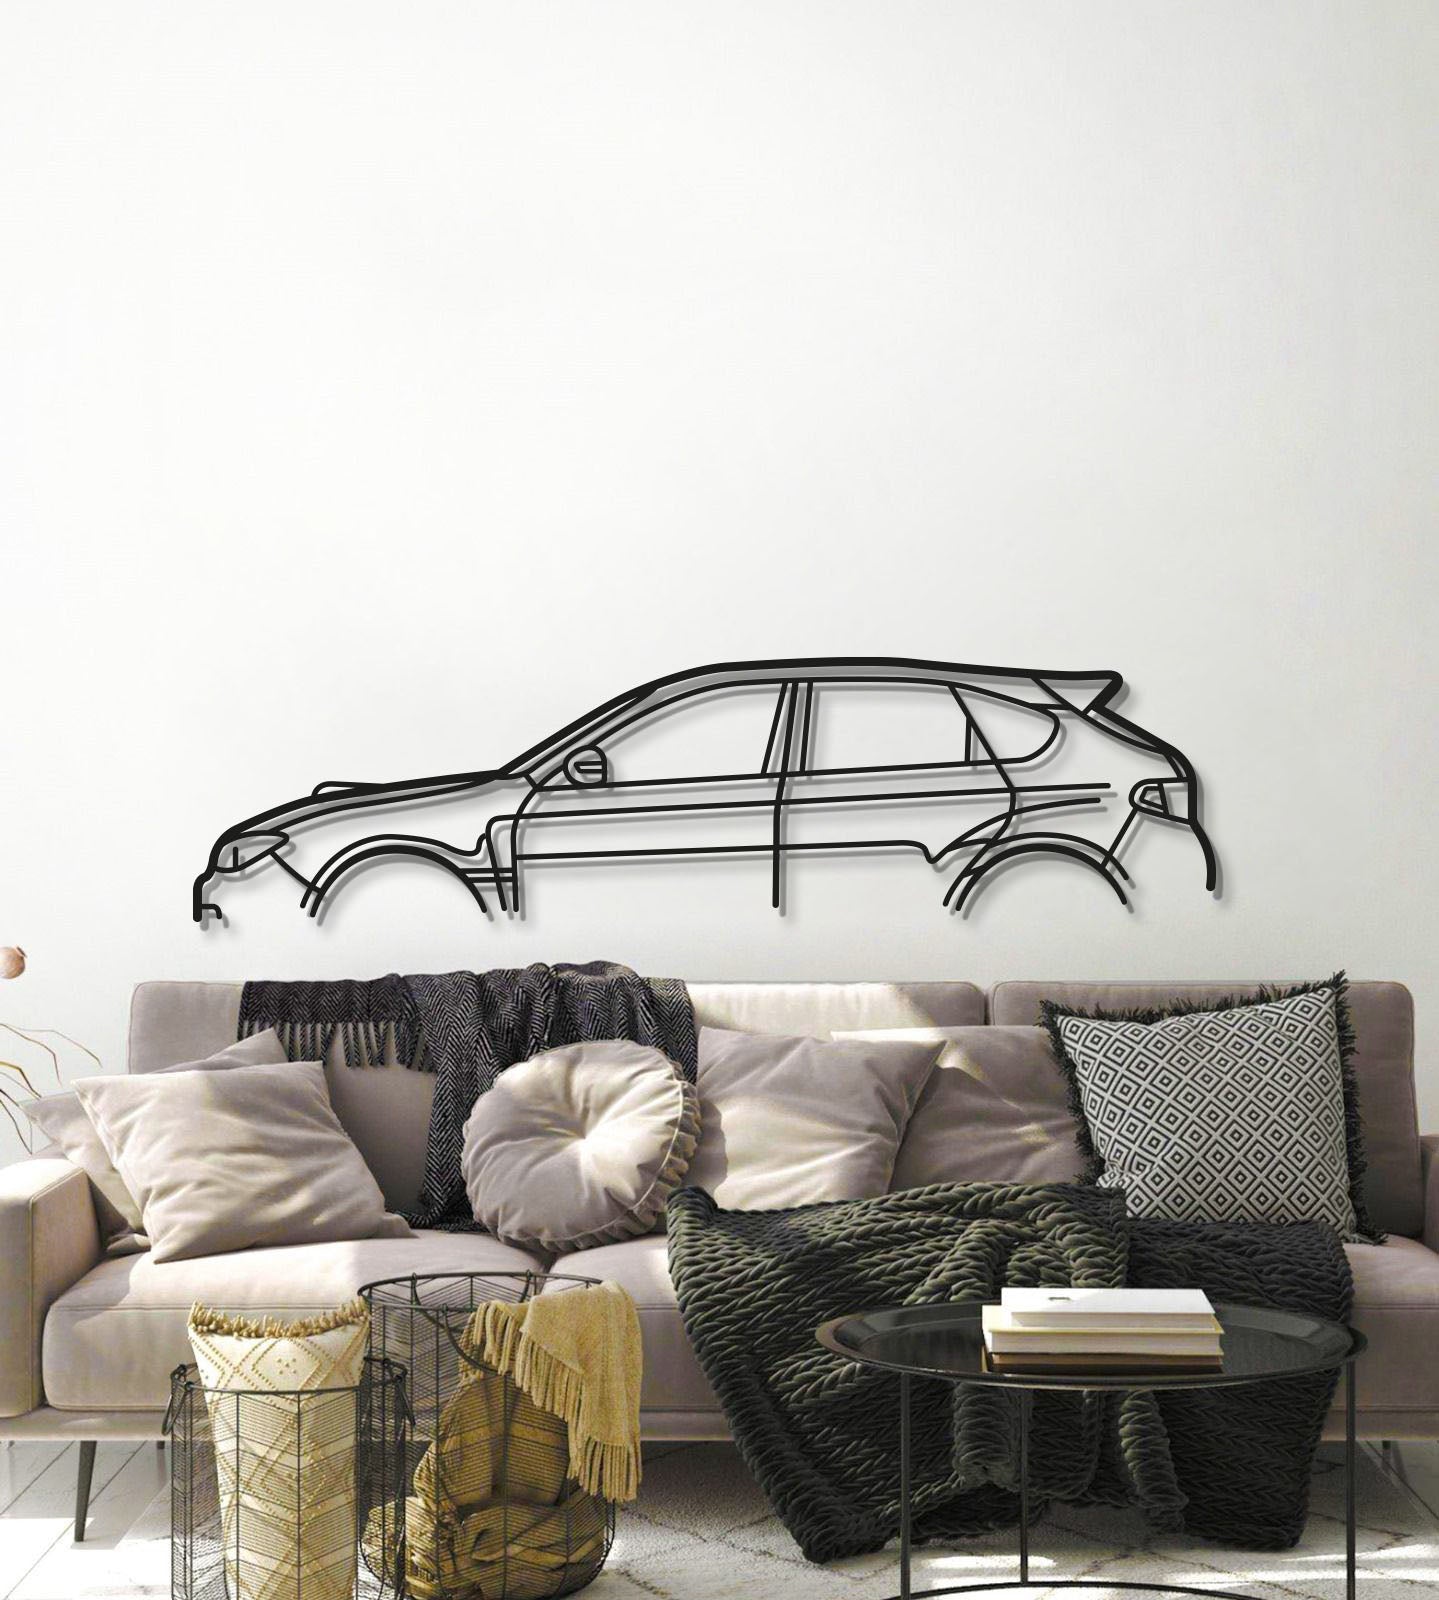 Impreza WRX STI GR Metal Car Wall Art - MT0994